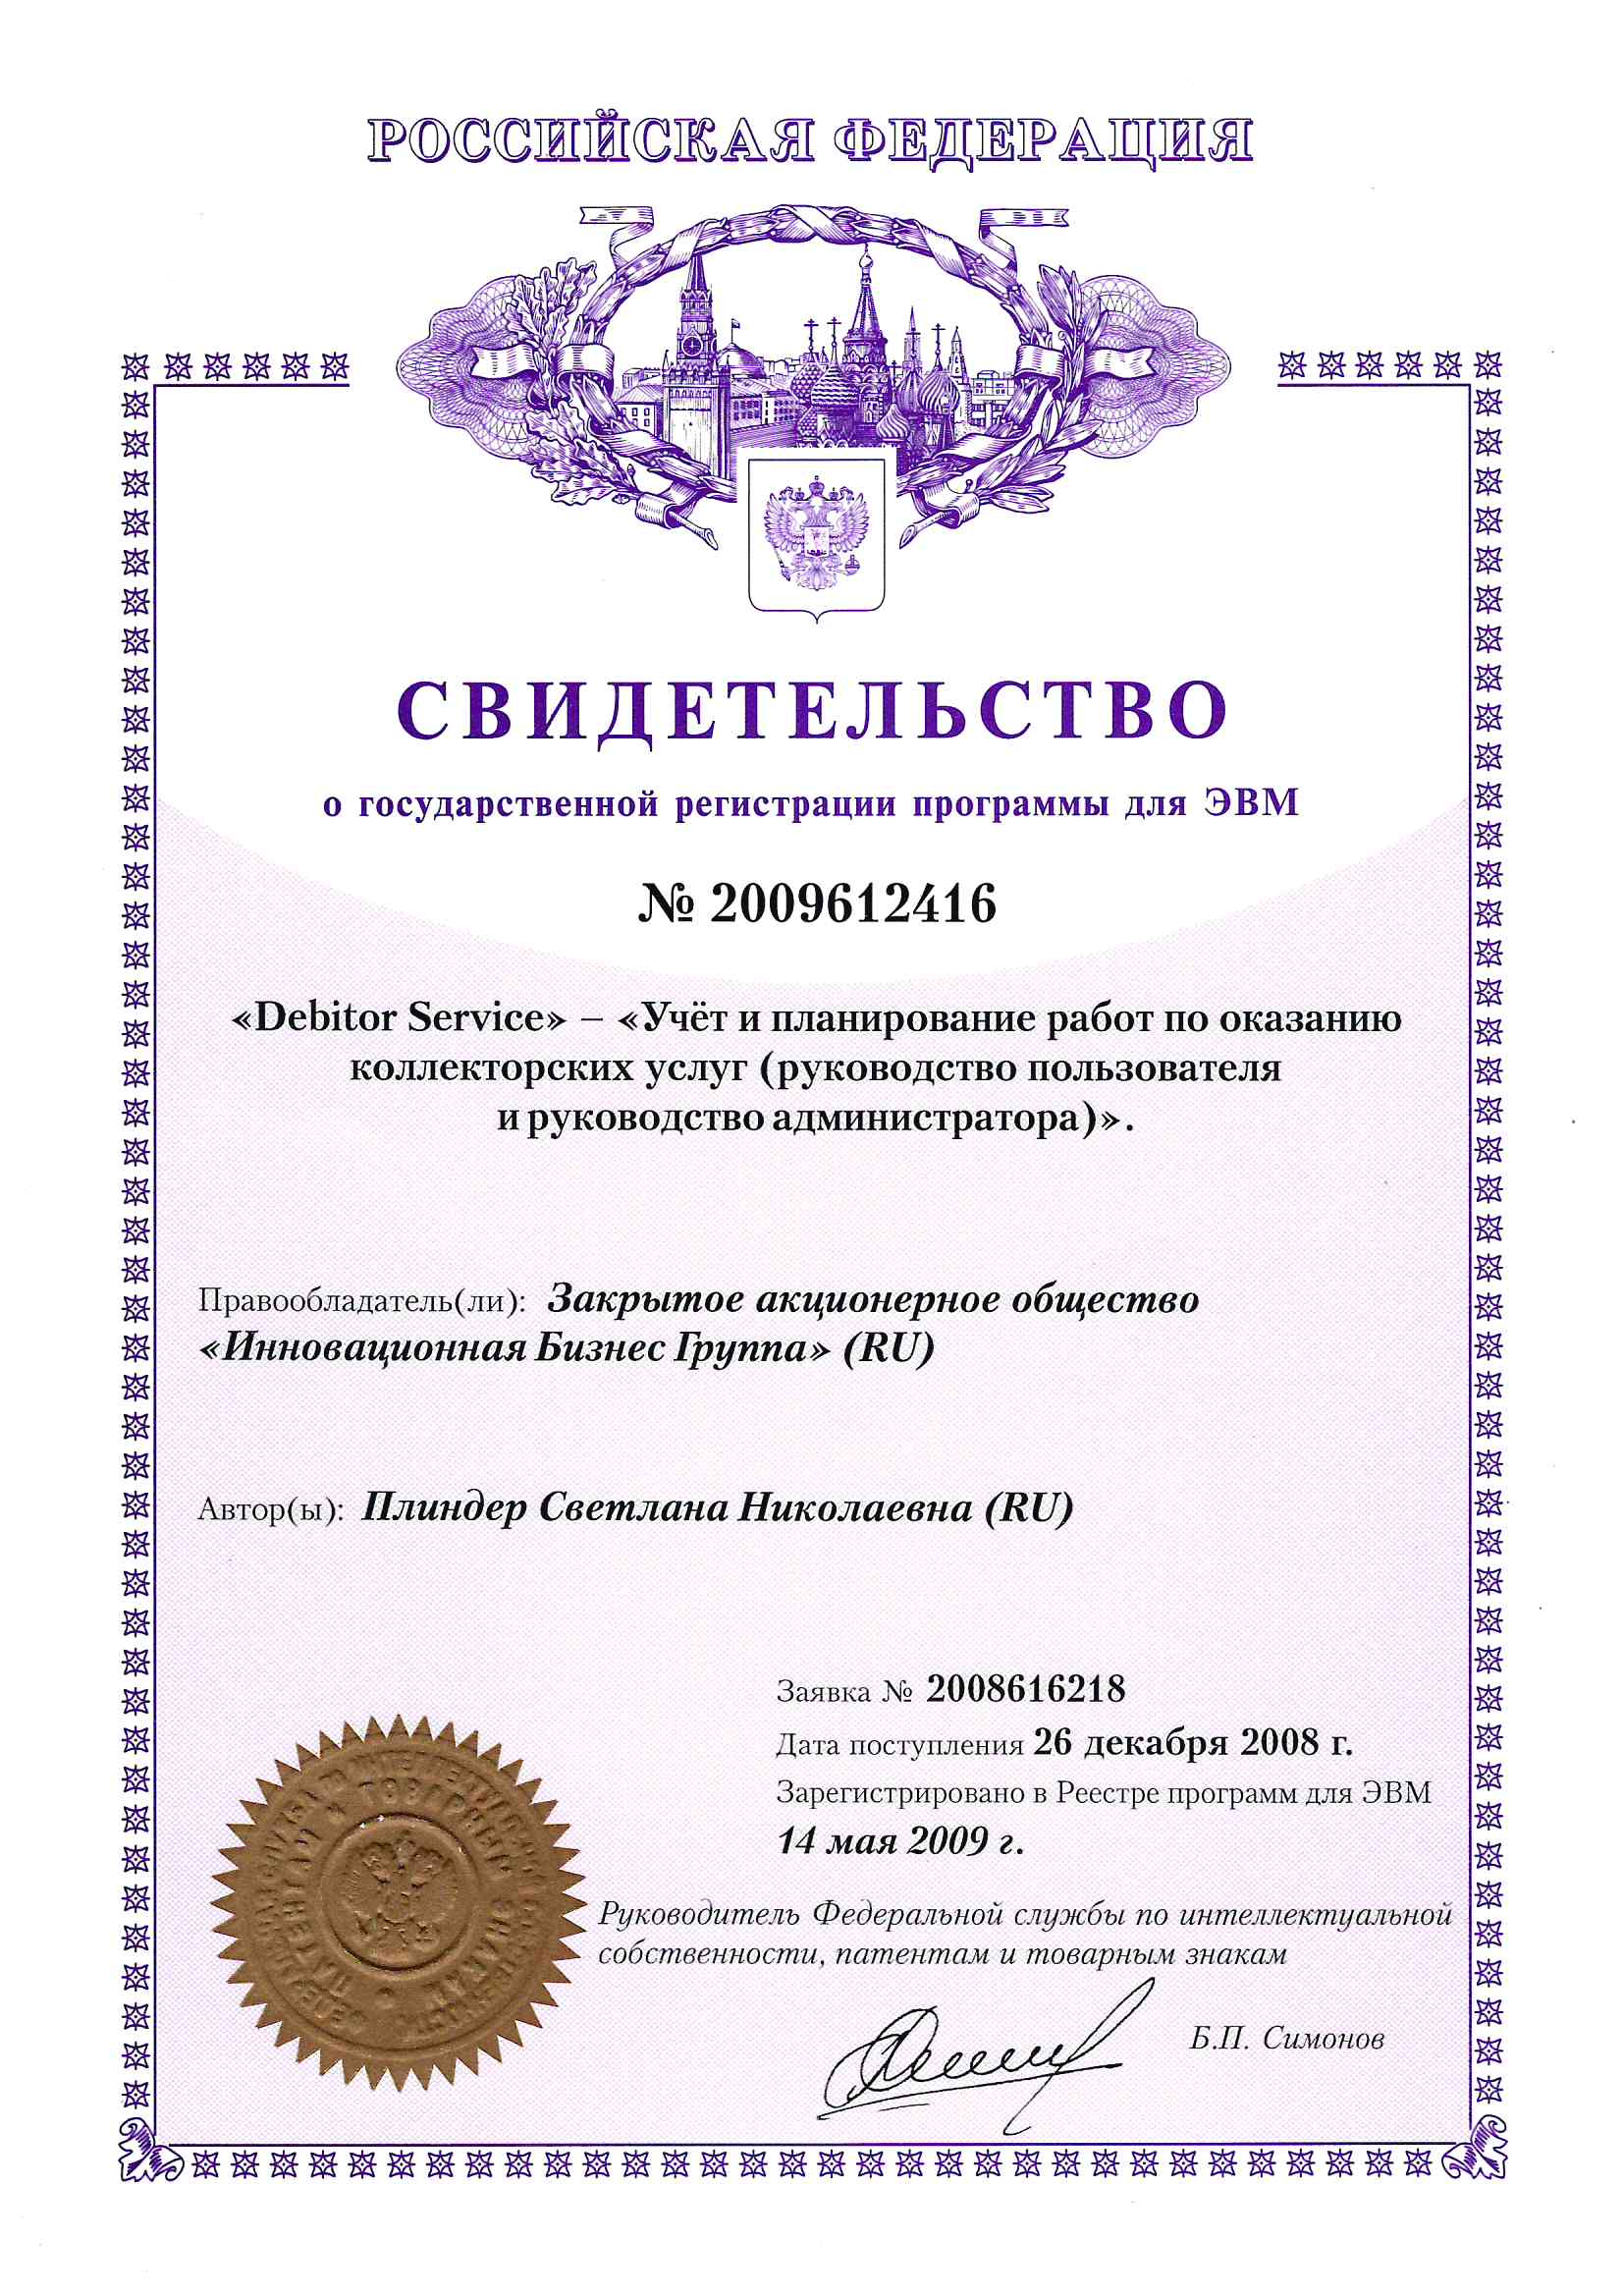 Свидетельство о государственной регистрации программы для ЭВМ №2009612416